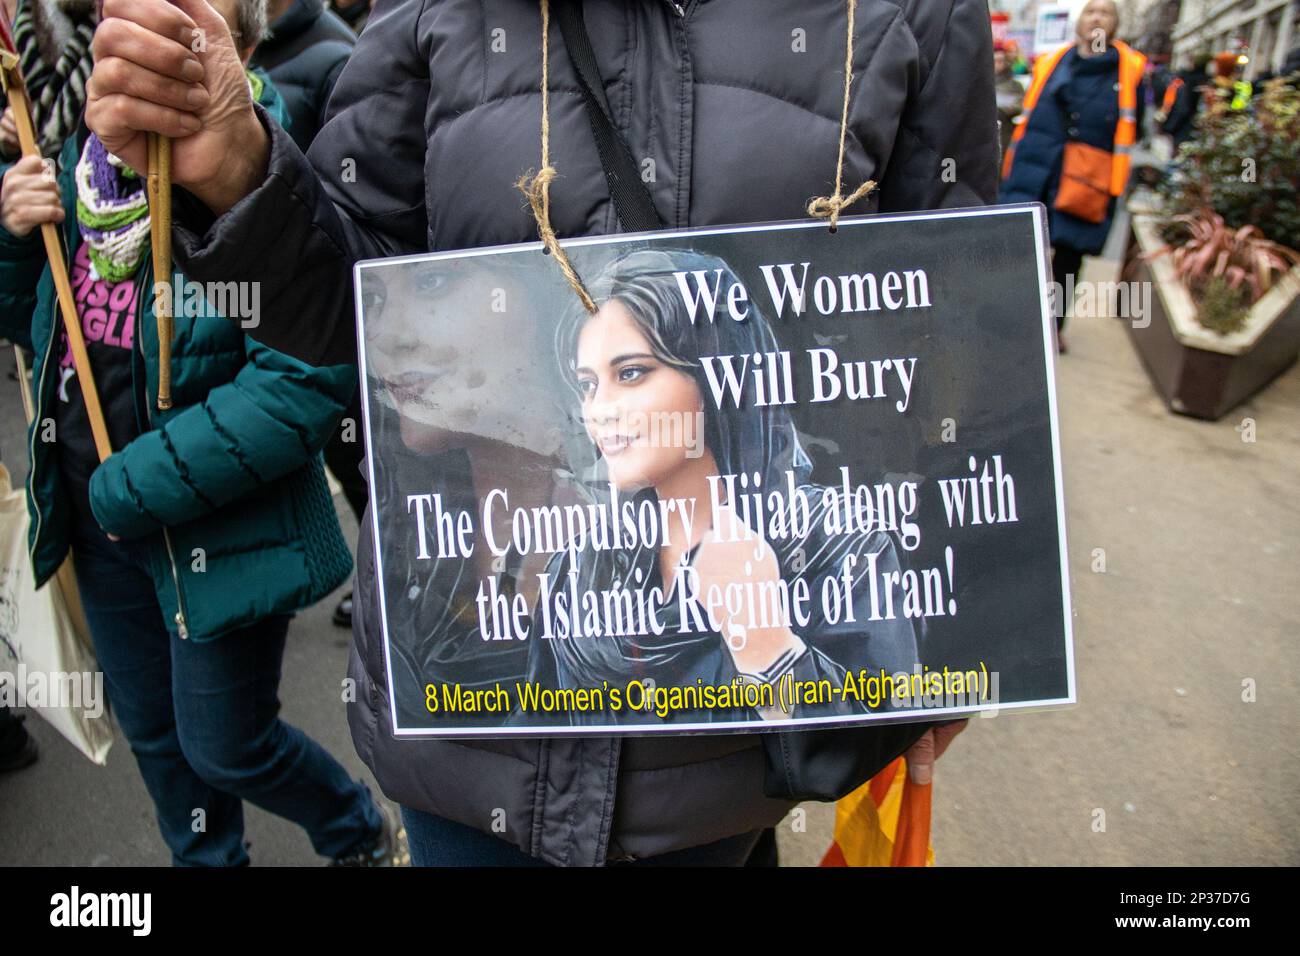 Londres, Reino Unido - 4 de marzo de 2023: Miles de mujeres, incluidas mujeres iraníes y afganas que llevaban consignas de 'libertad de vida de las mujeres', marcharon en el centro de Londres hacia Trafalgar Square para protestar contra la violencia masculina y por la igualdad de género. La marcha y el mitin formaron parte del evento anual Million Women Rise celebrado para conmemorar el Día Internacional de la Mujer. Crédito: Sinai Noor / Alamy Live News Foto de stock